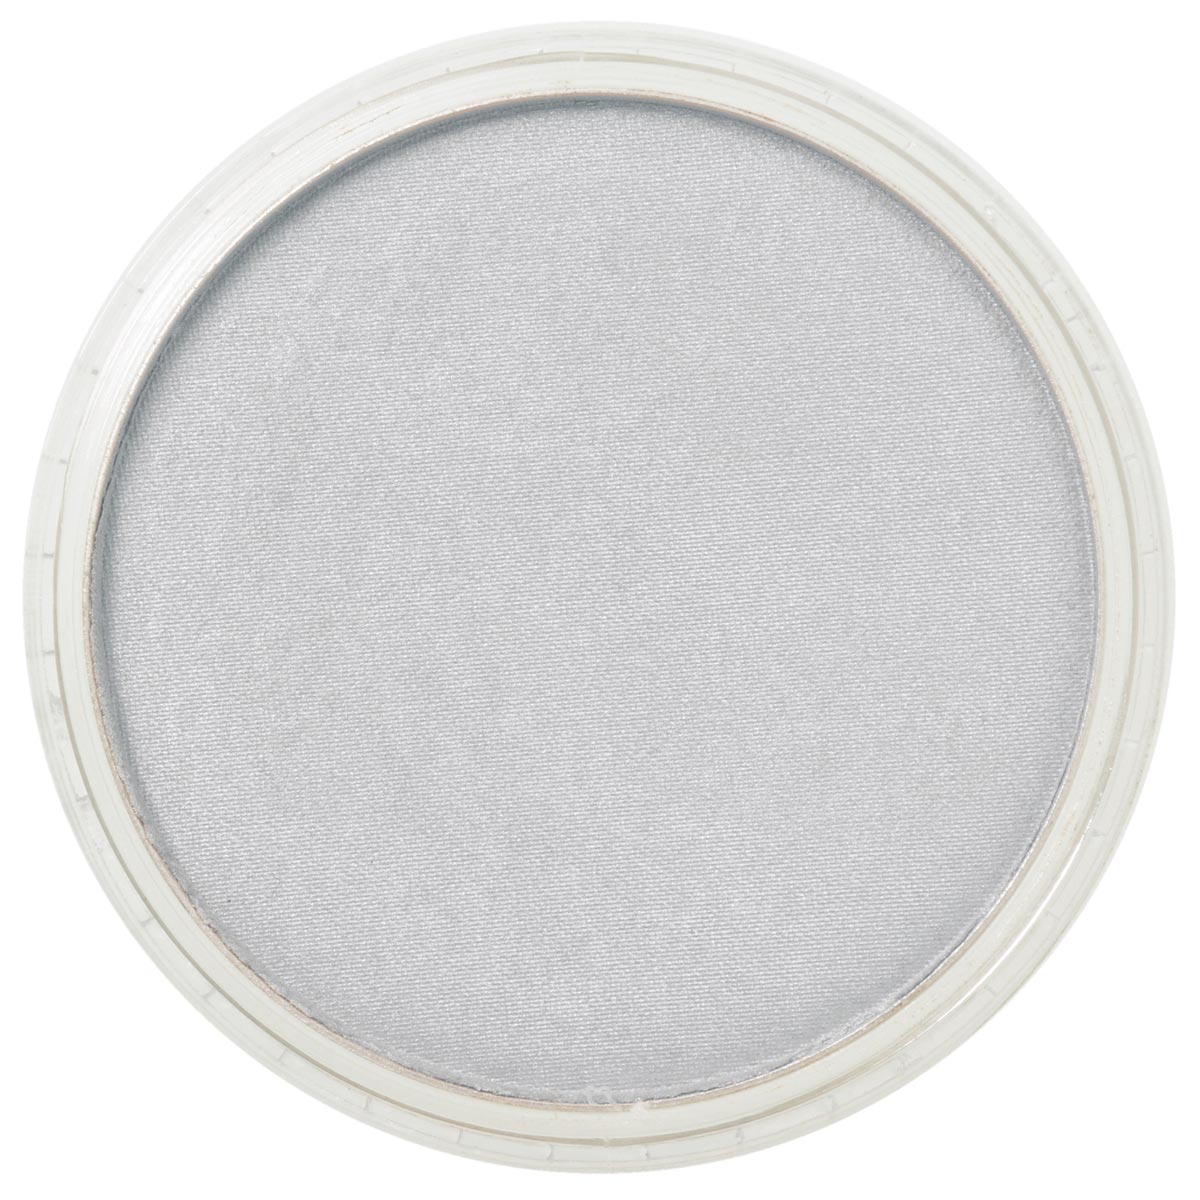 Pan Pastel Metallic Silver 920.5